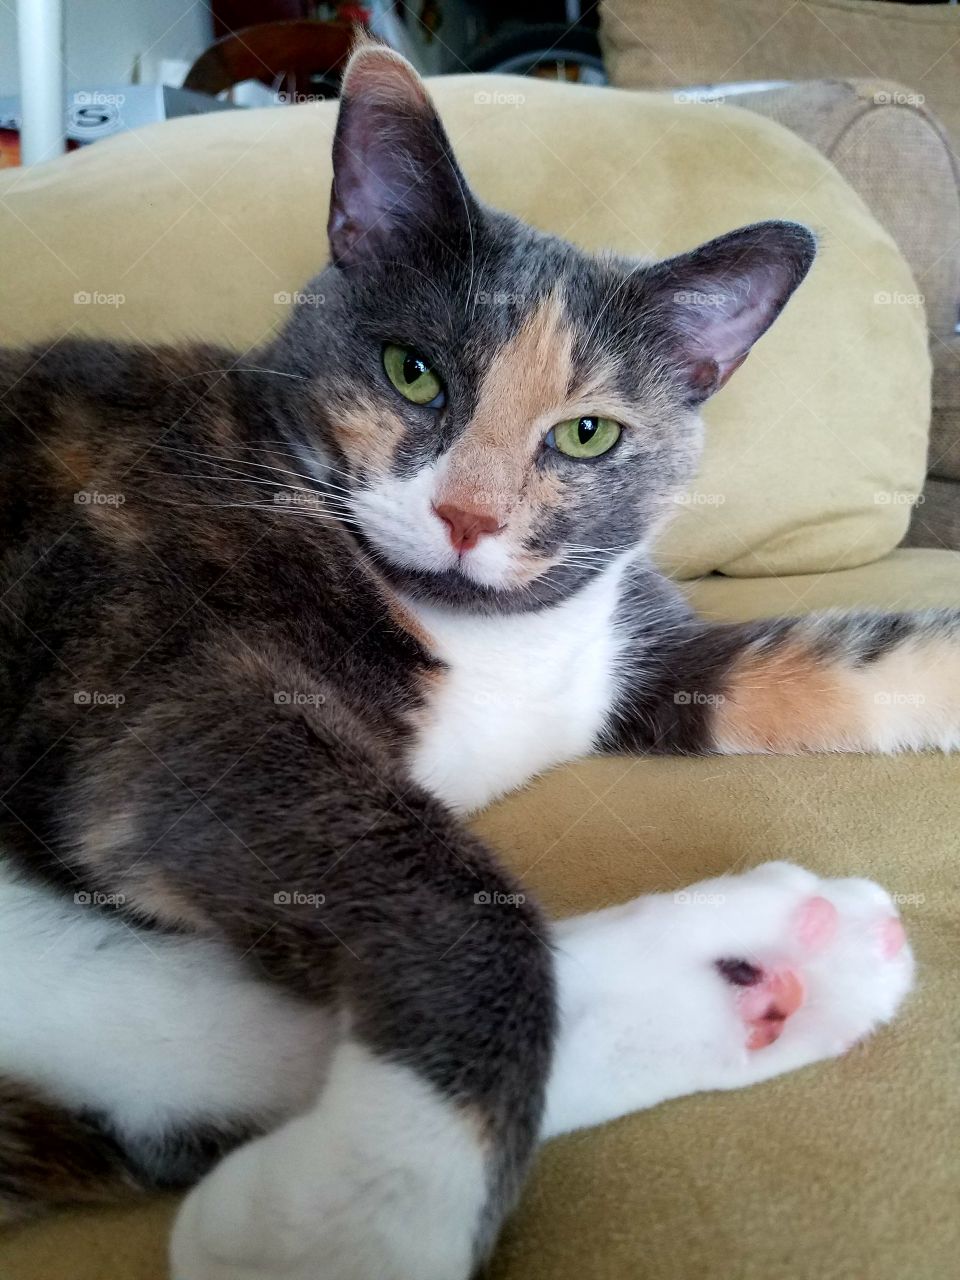 Kitty Cat: Hepburn